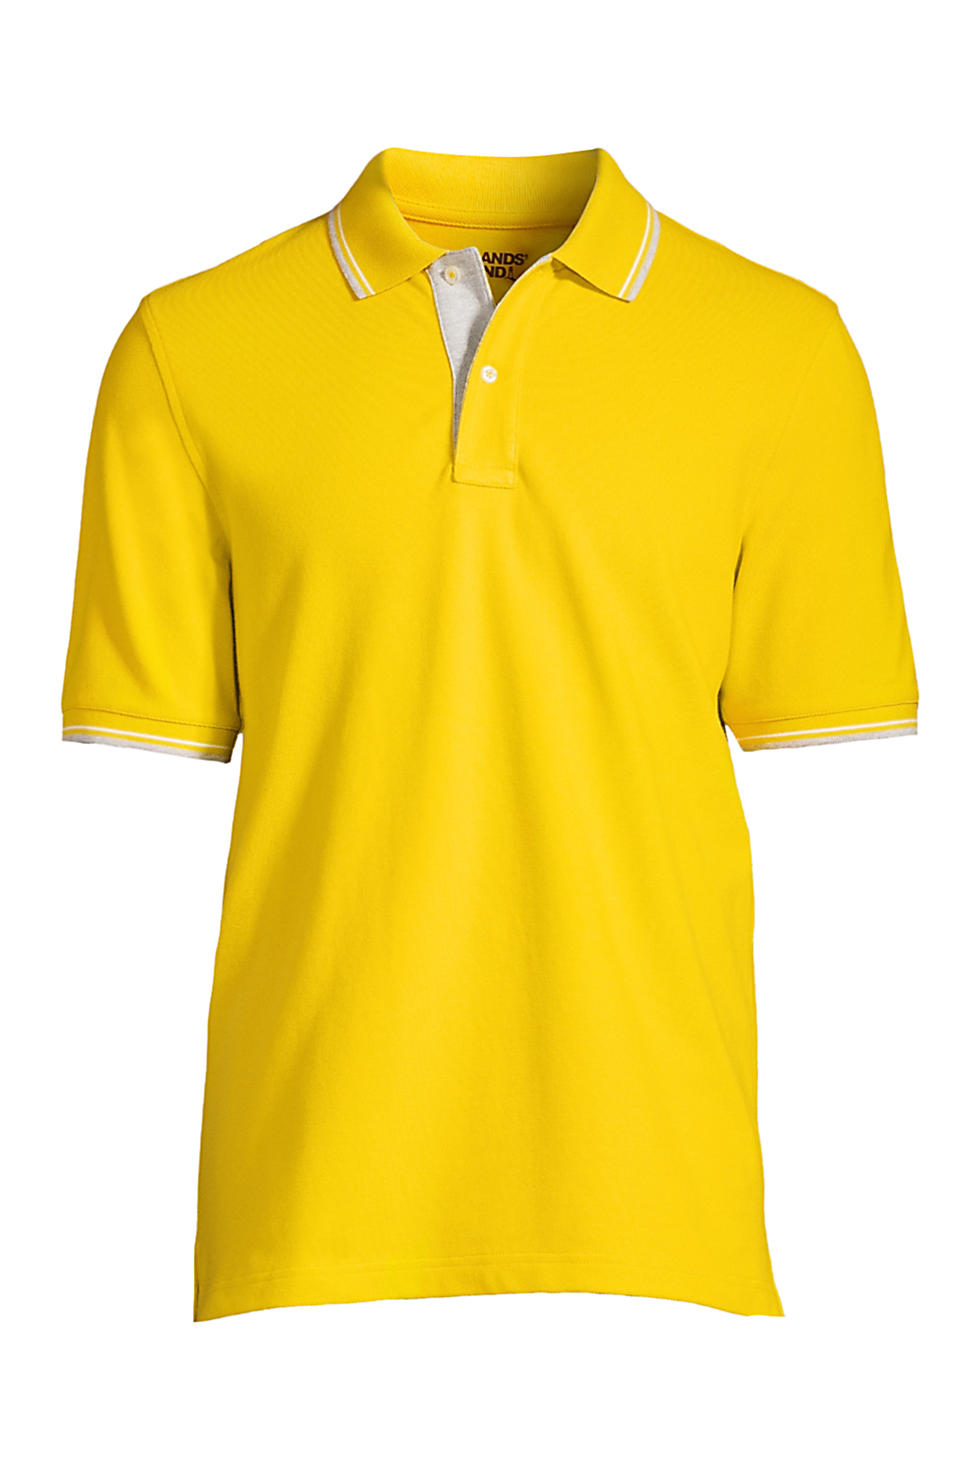 Lands End Men's Short Sleeve Comfort-First Mesh Polo Shirt